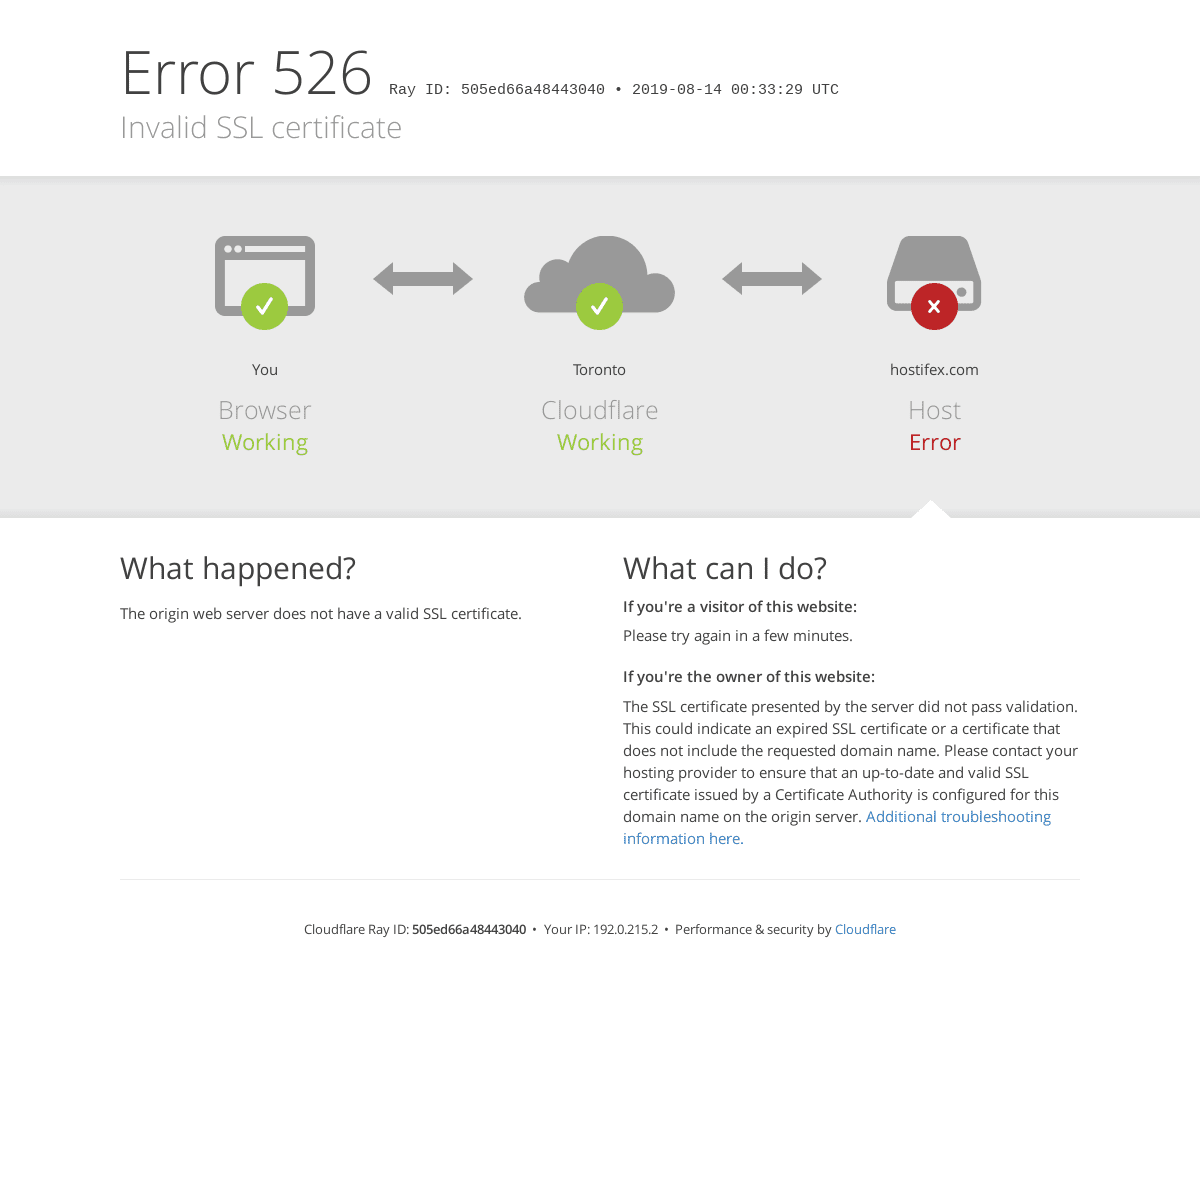 hostifex.com | 526: Invalid SSL certificate